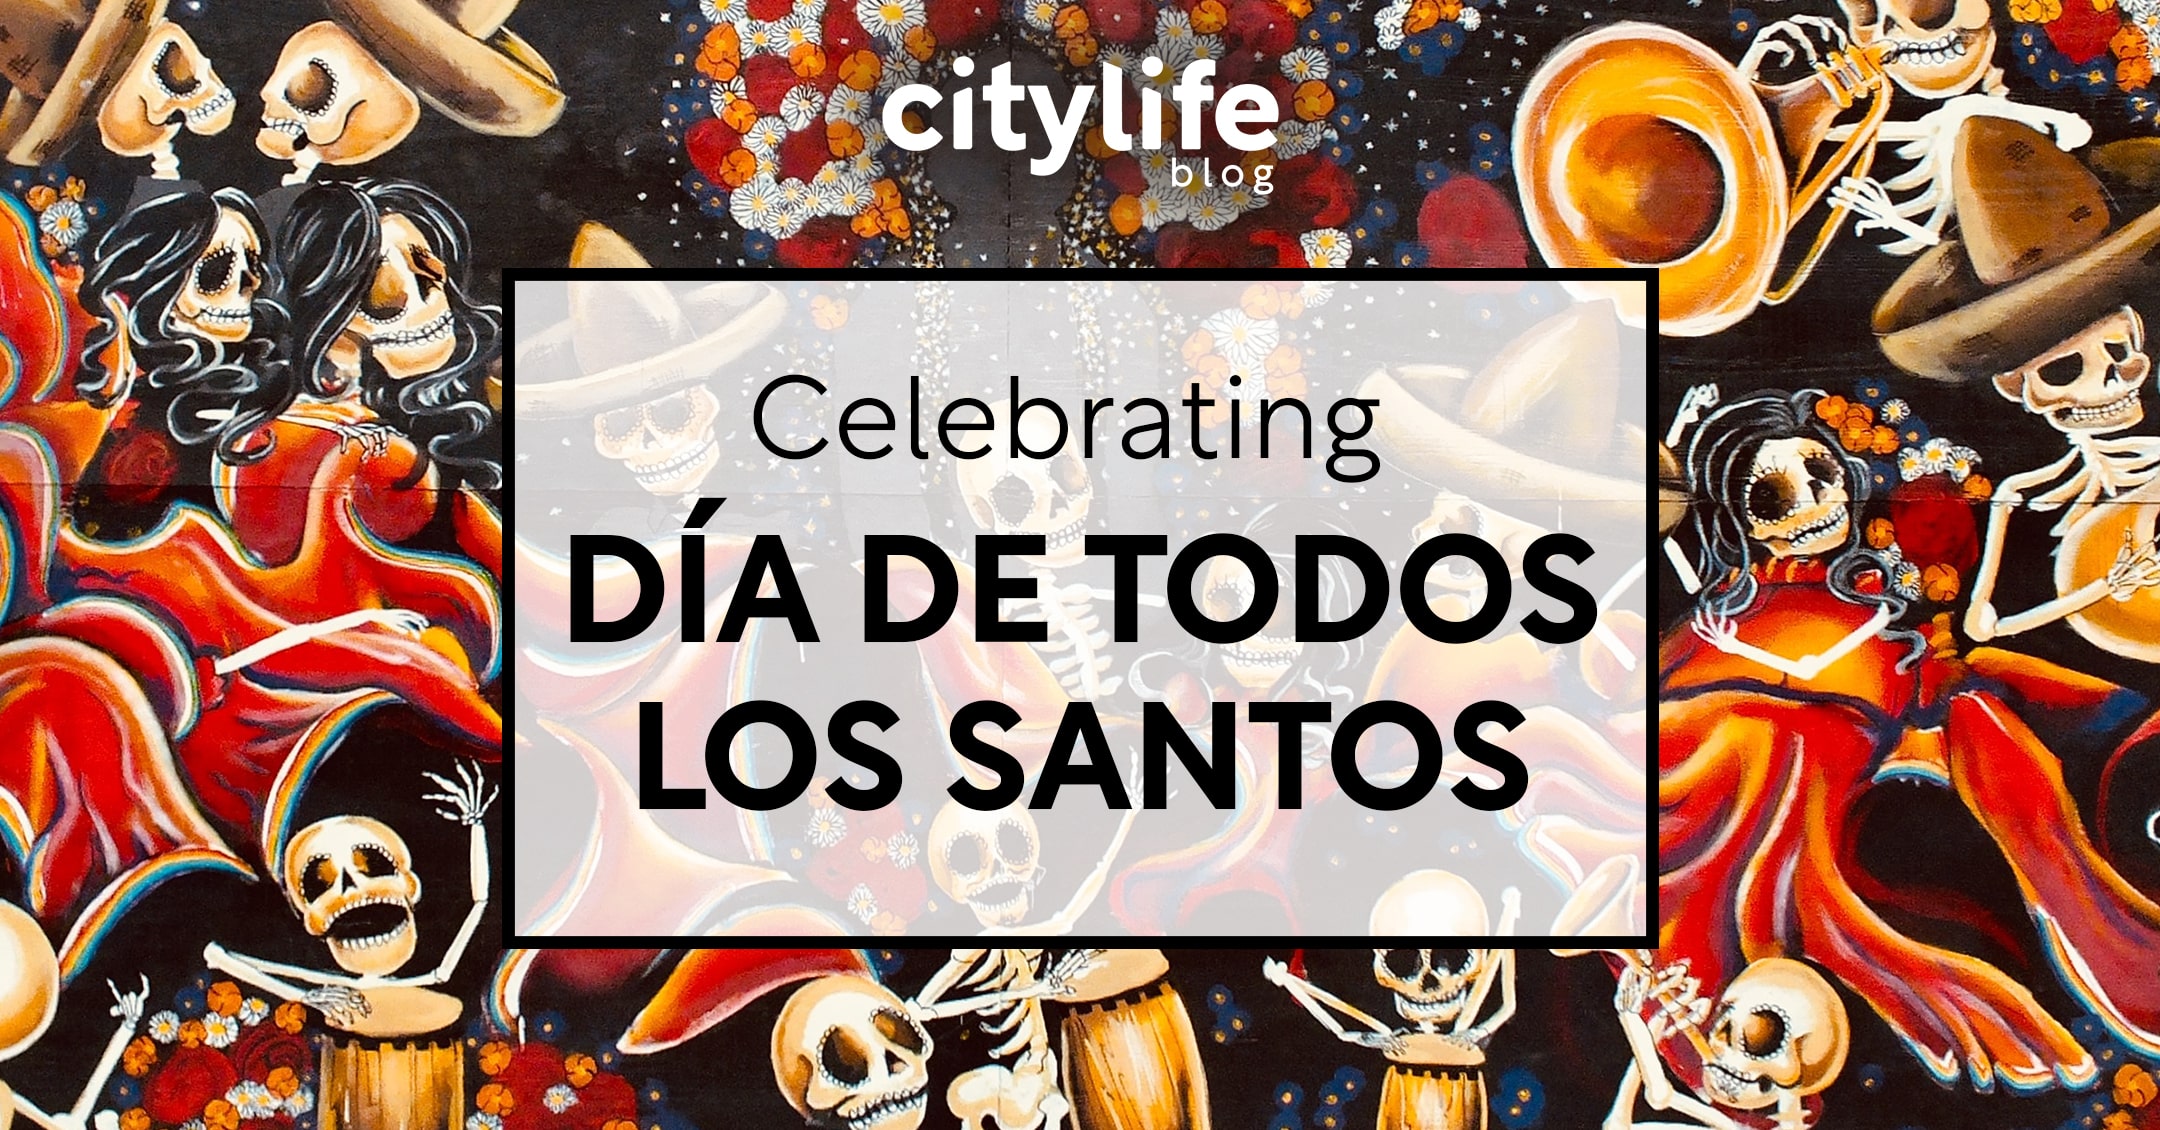 featured-image-dia-de-todos-los-santos-muertos-citylife-madrid